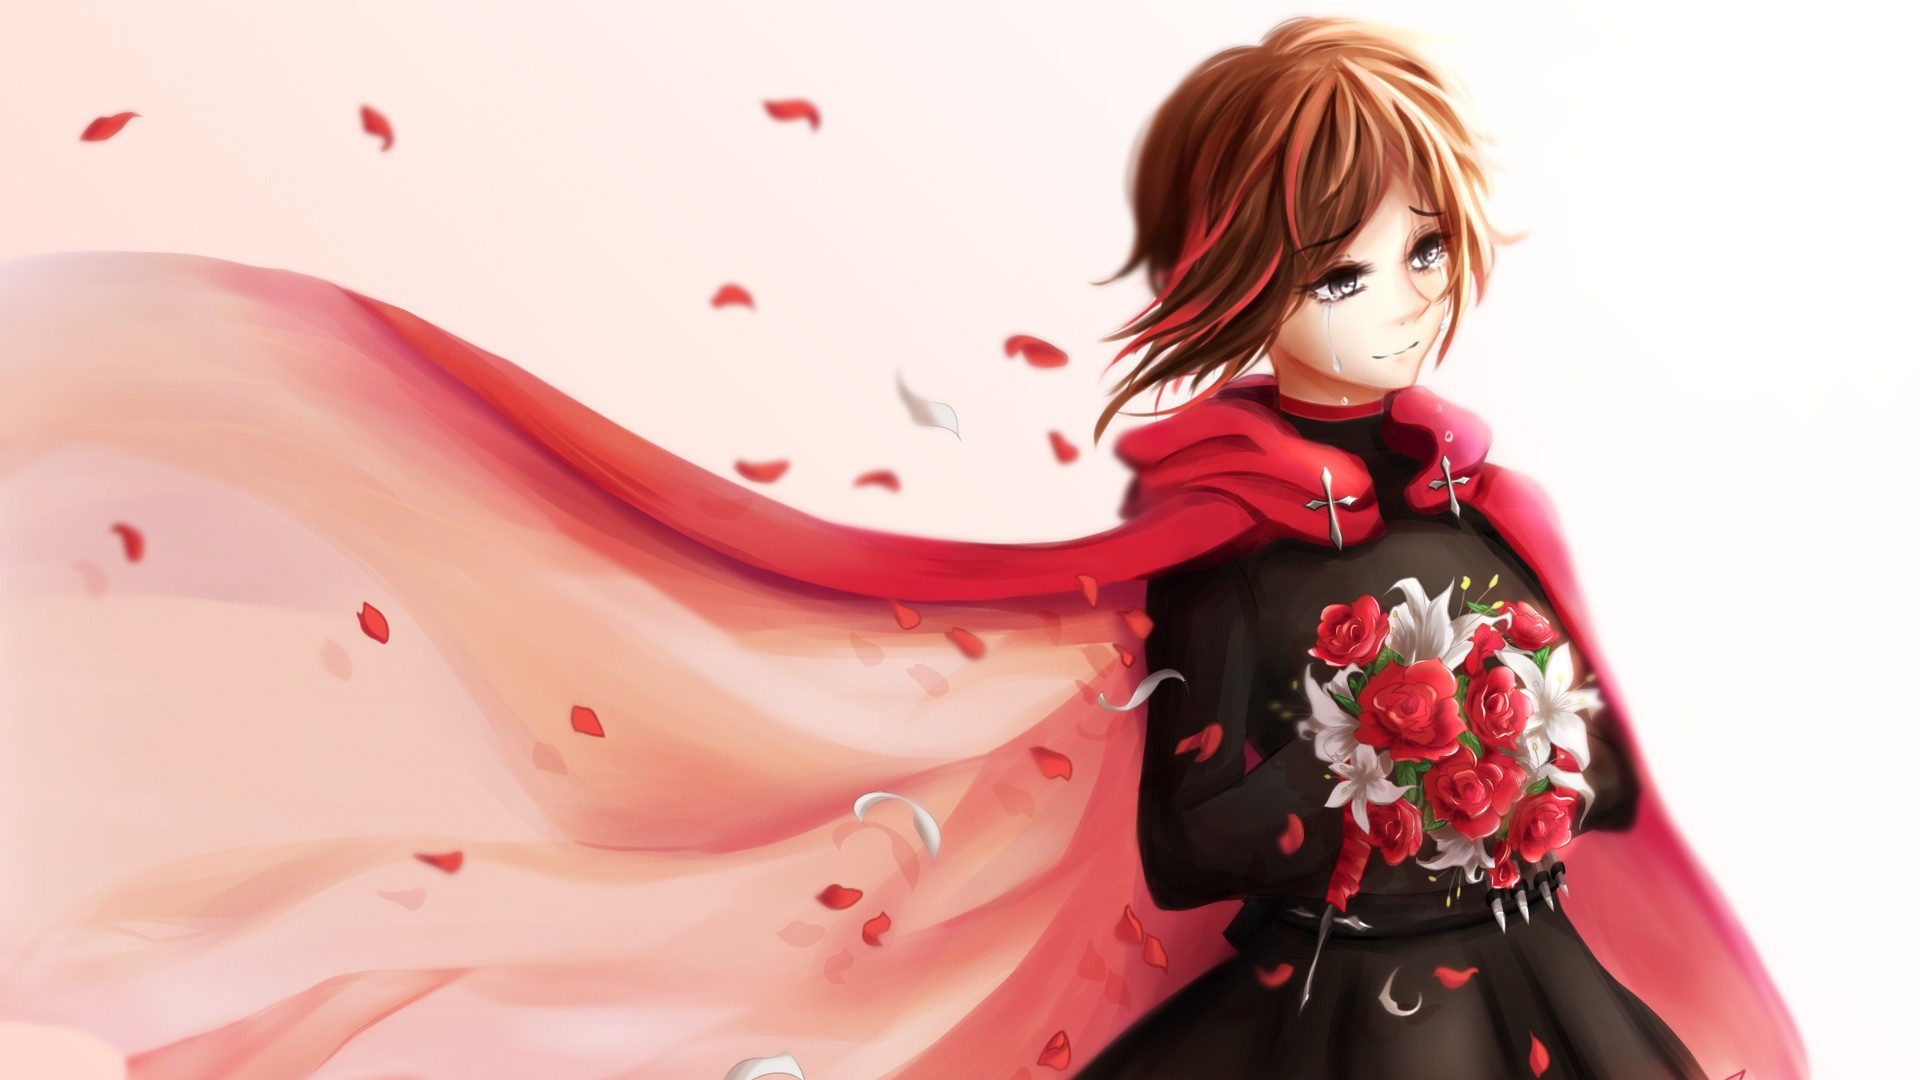 Rwby ruby rose anime